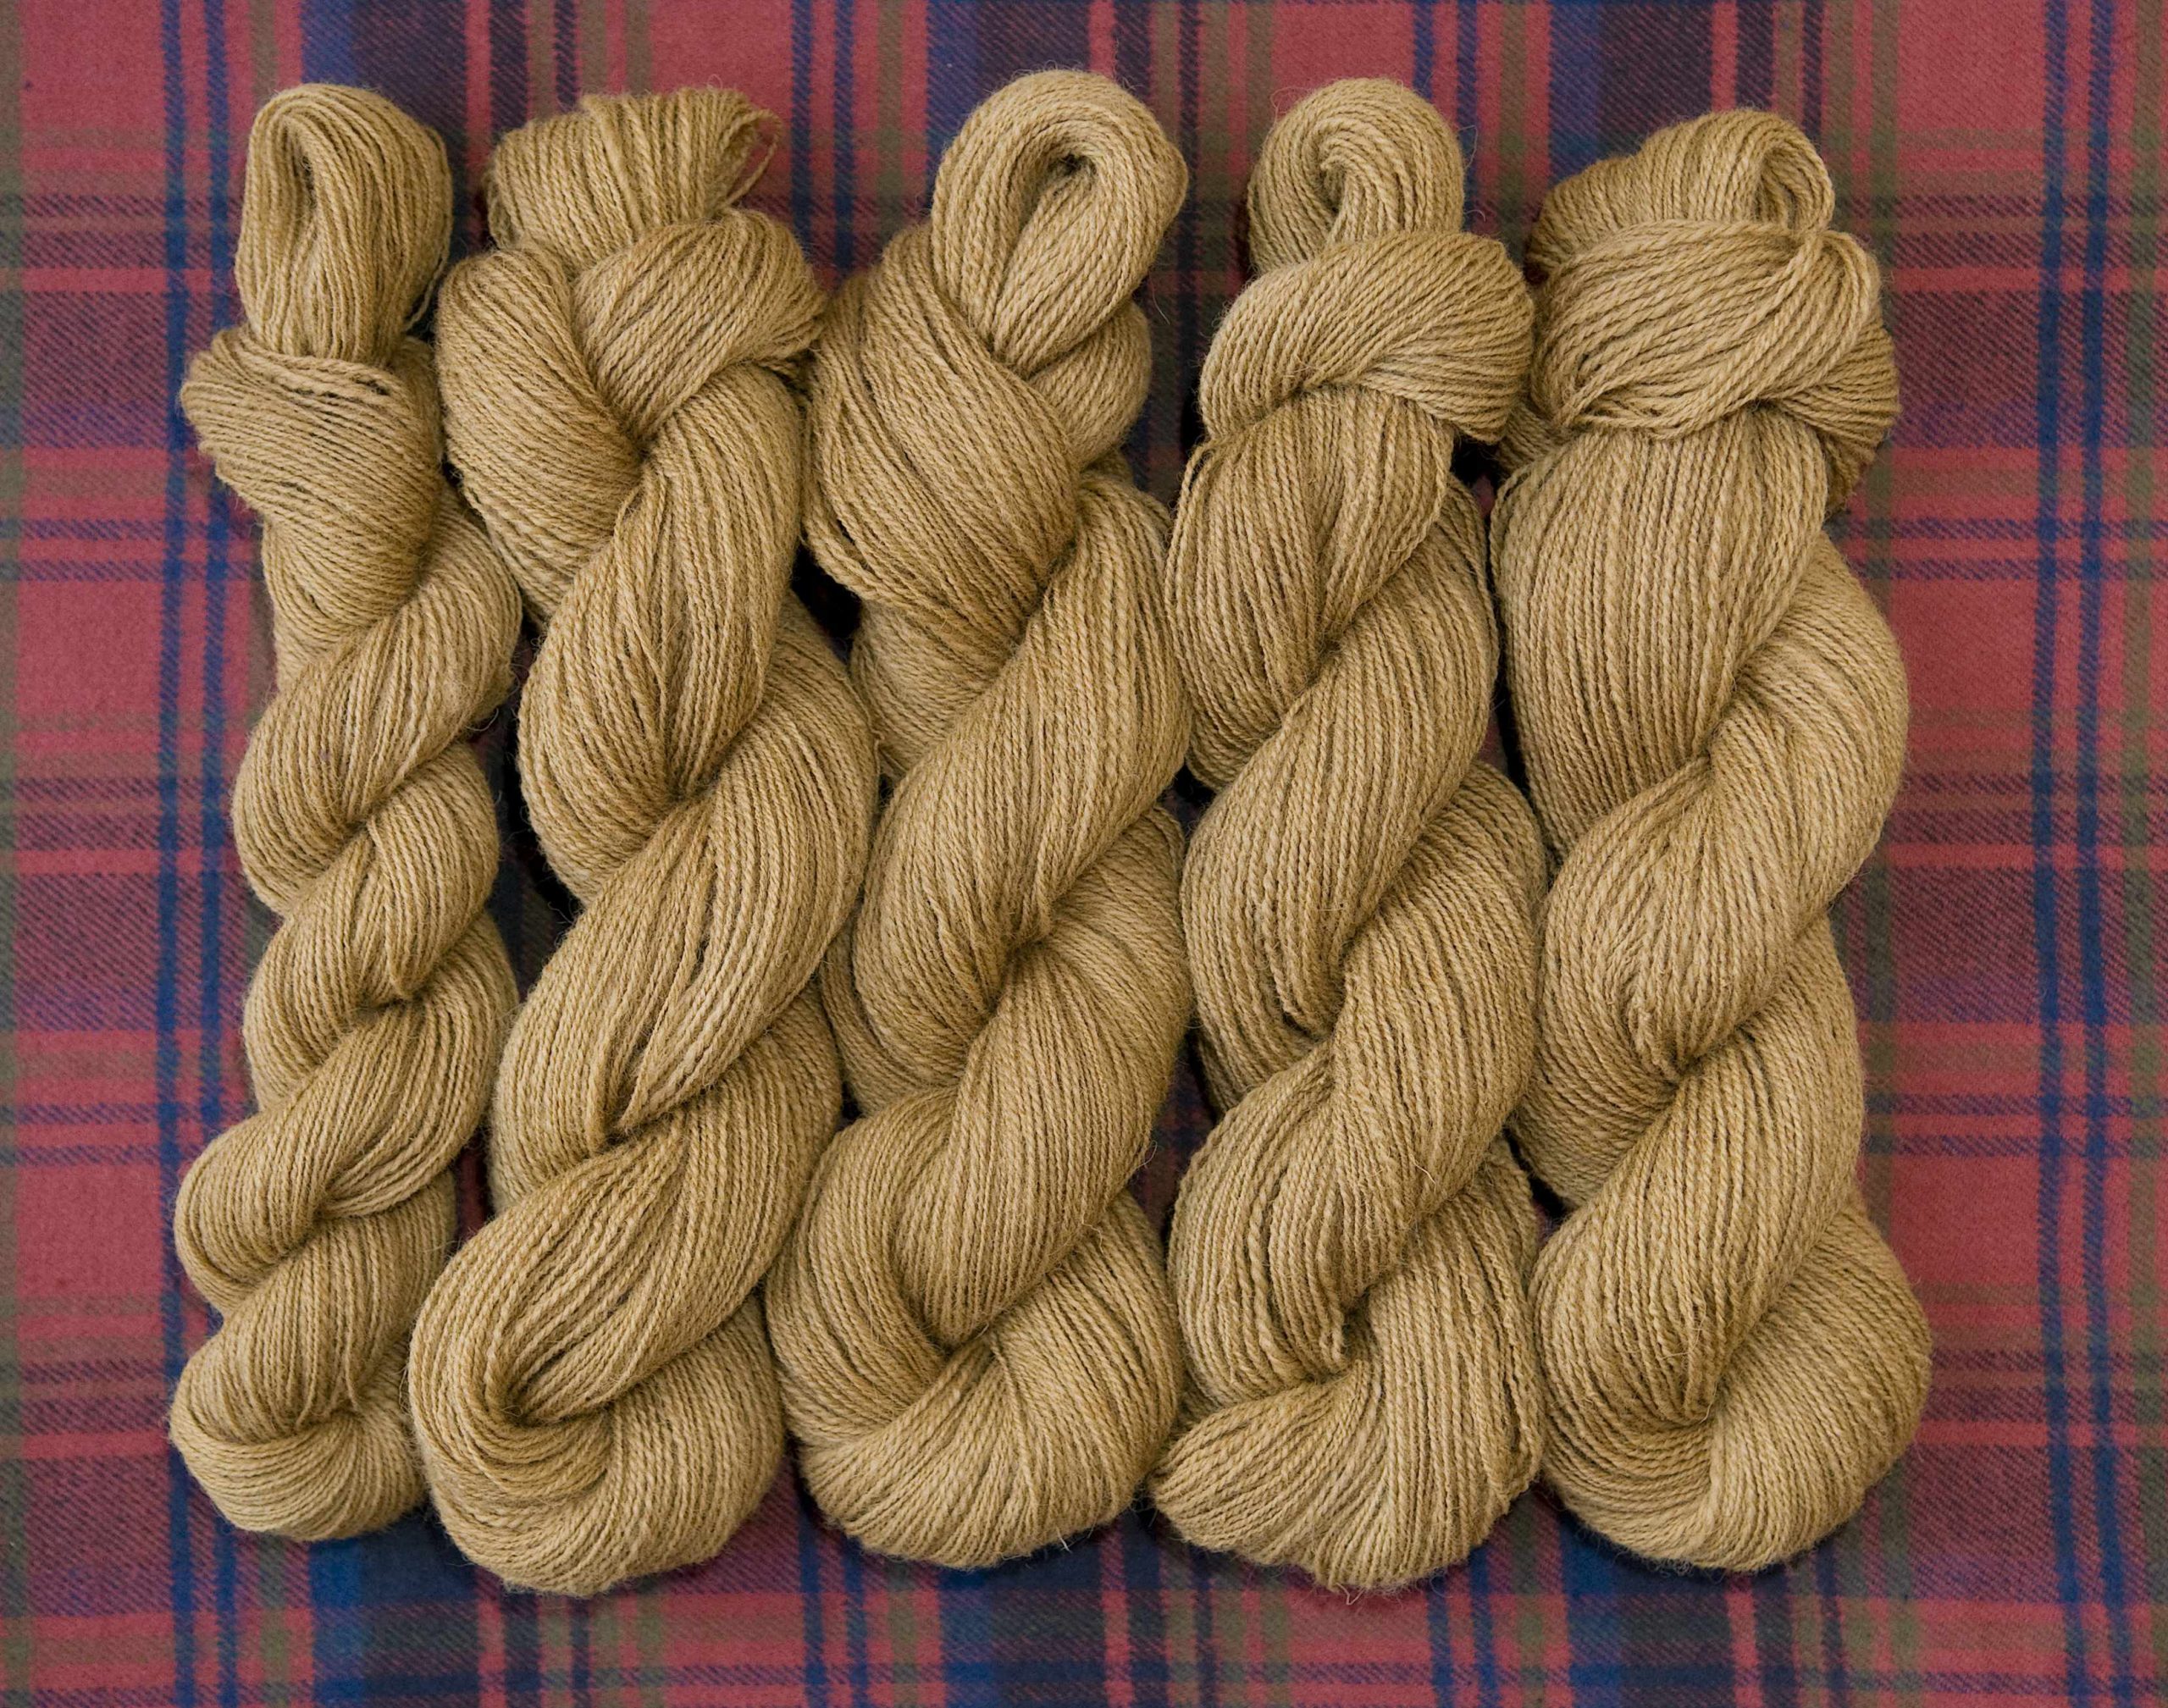 Skeins of handspun yarn for Hickory Gossamer Tunic.